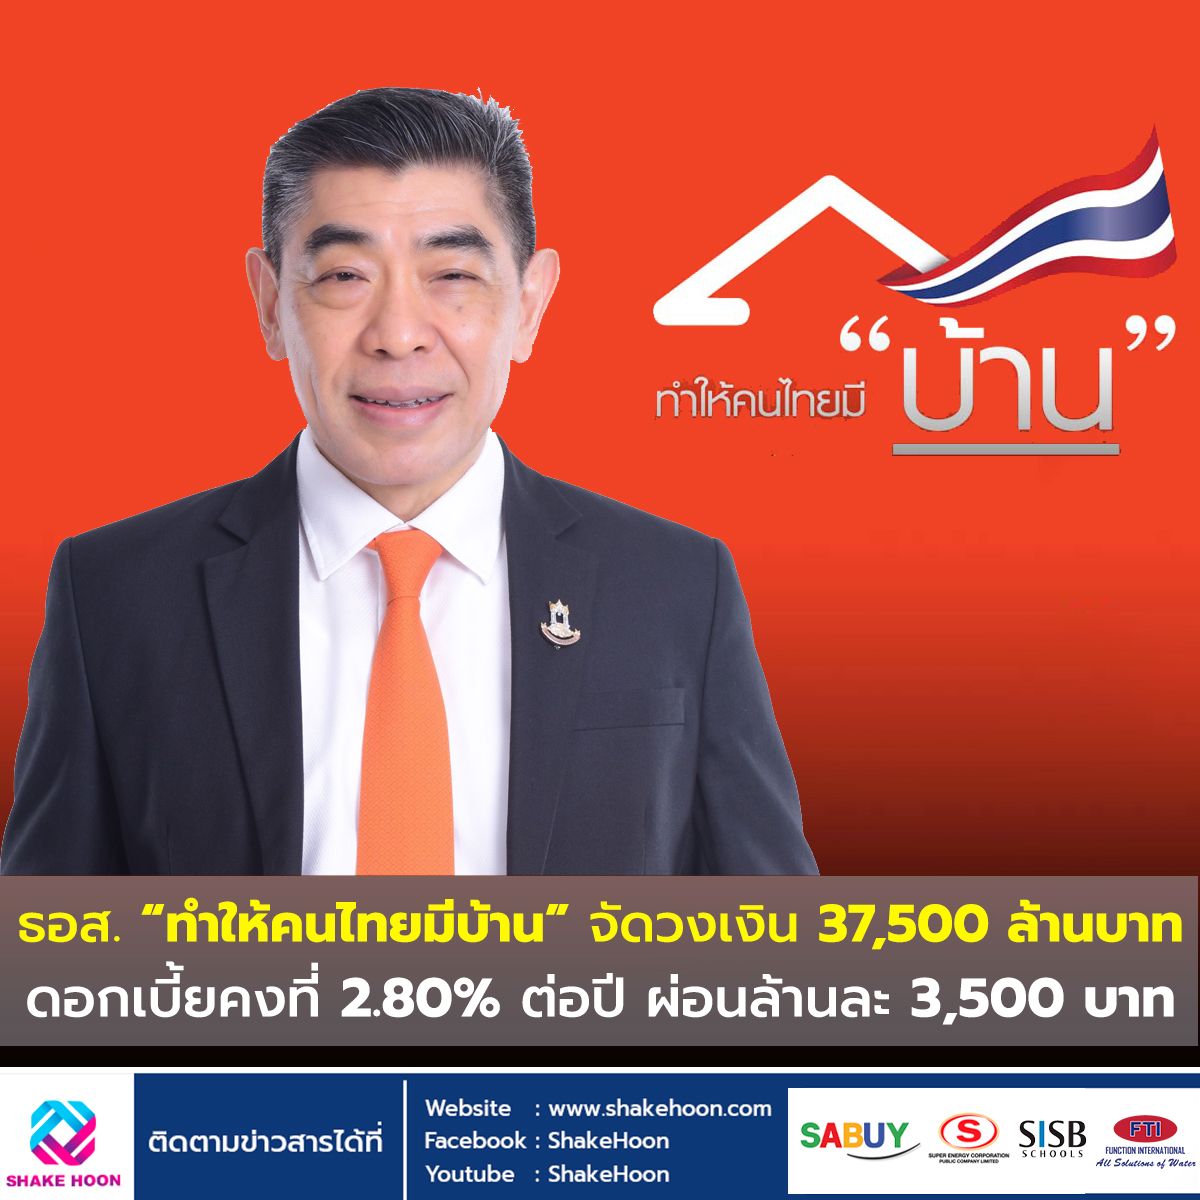 ธอส. “ทำให้คนไทยมีบ้าน” จัดวงเงิน 37,500 ล้านบาท ดอกเบี้ยคงที่ 2.80% ต่อปี ผ่อนล้านละ 3,500 บาท